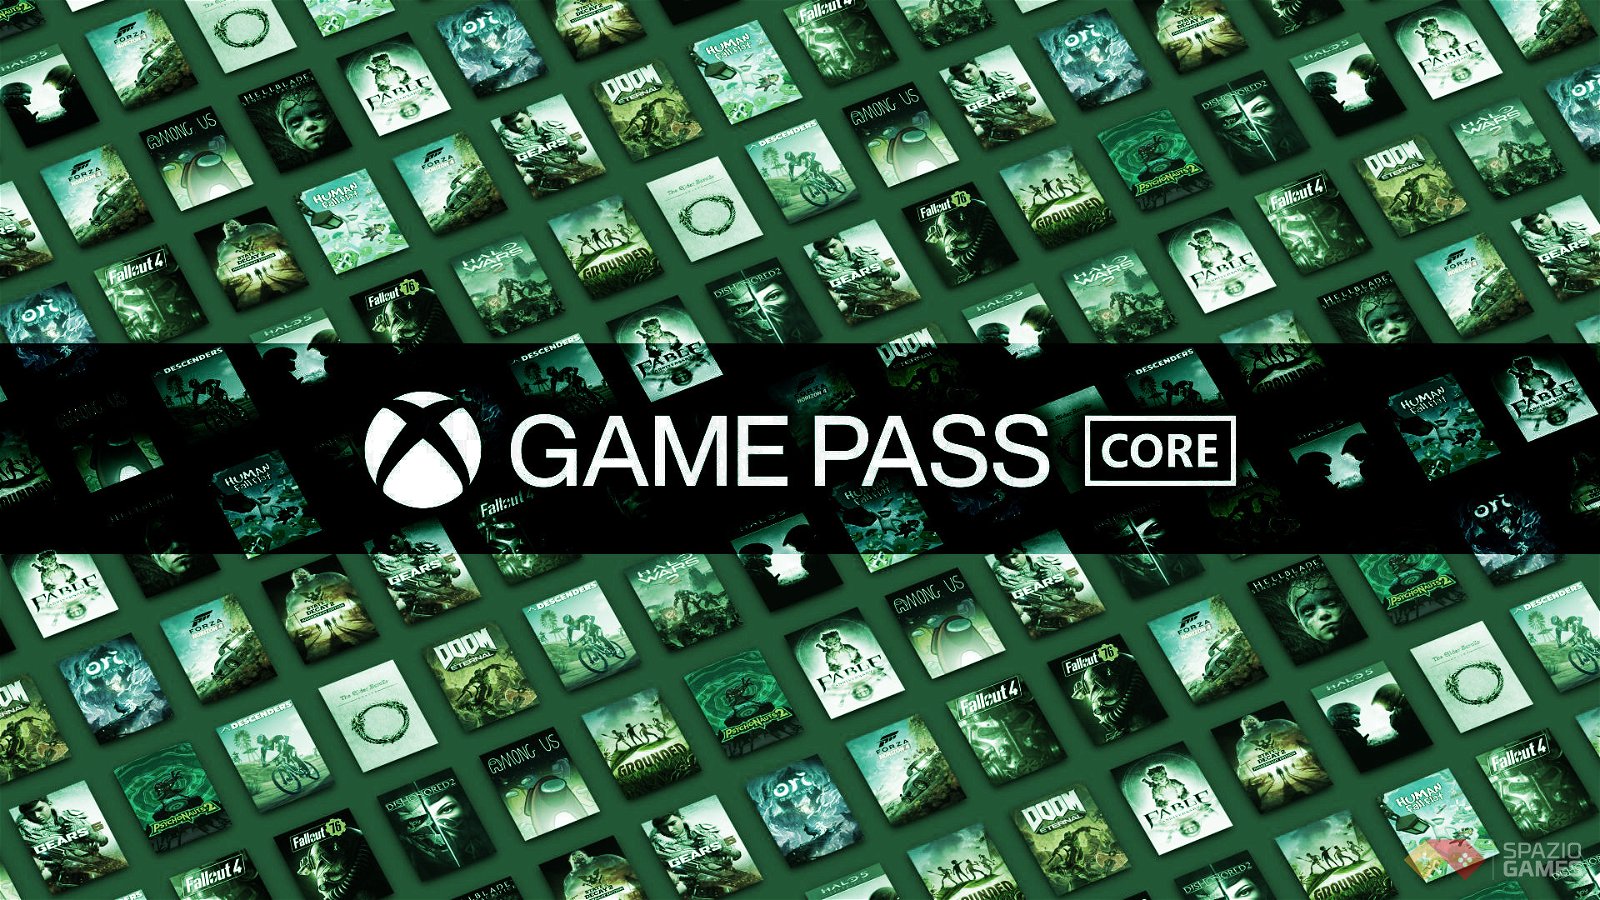 Xbox Game Pass Core svela 3 nuovi giochi gratis in arrivo dalla prossima settimana